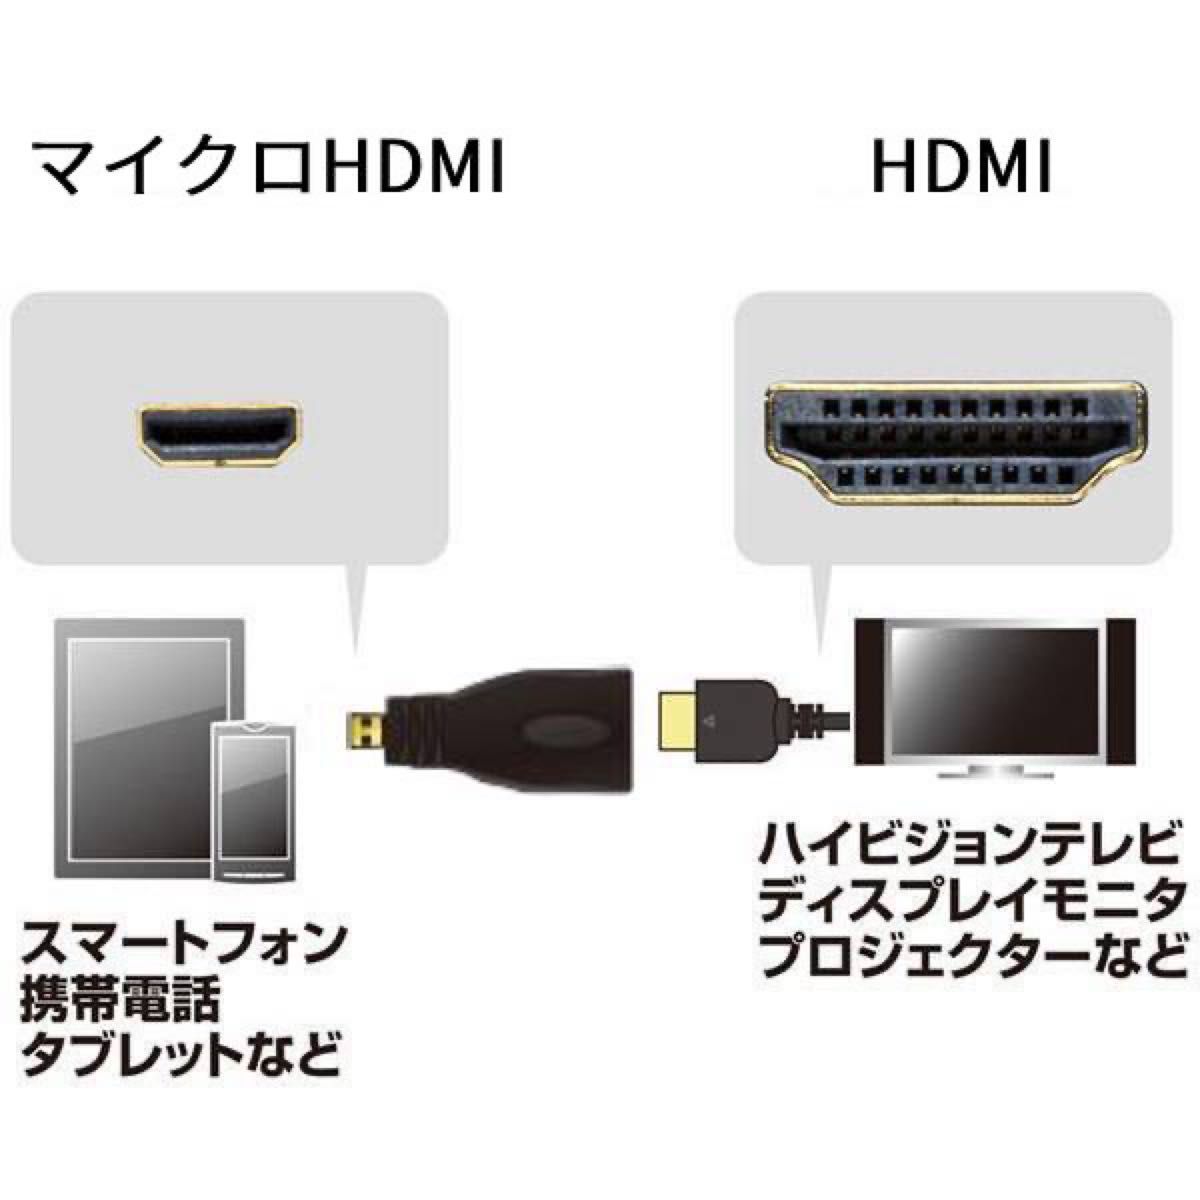 HDMI HDMIマイクロ変換プラグ